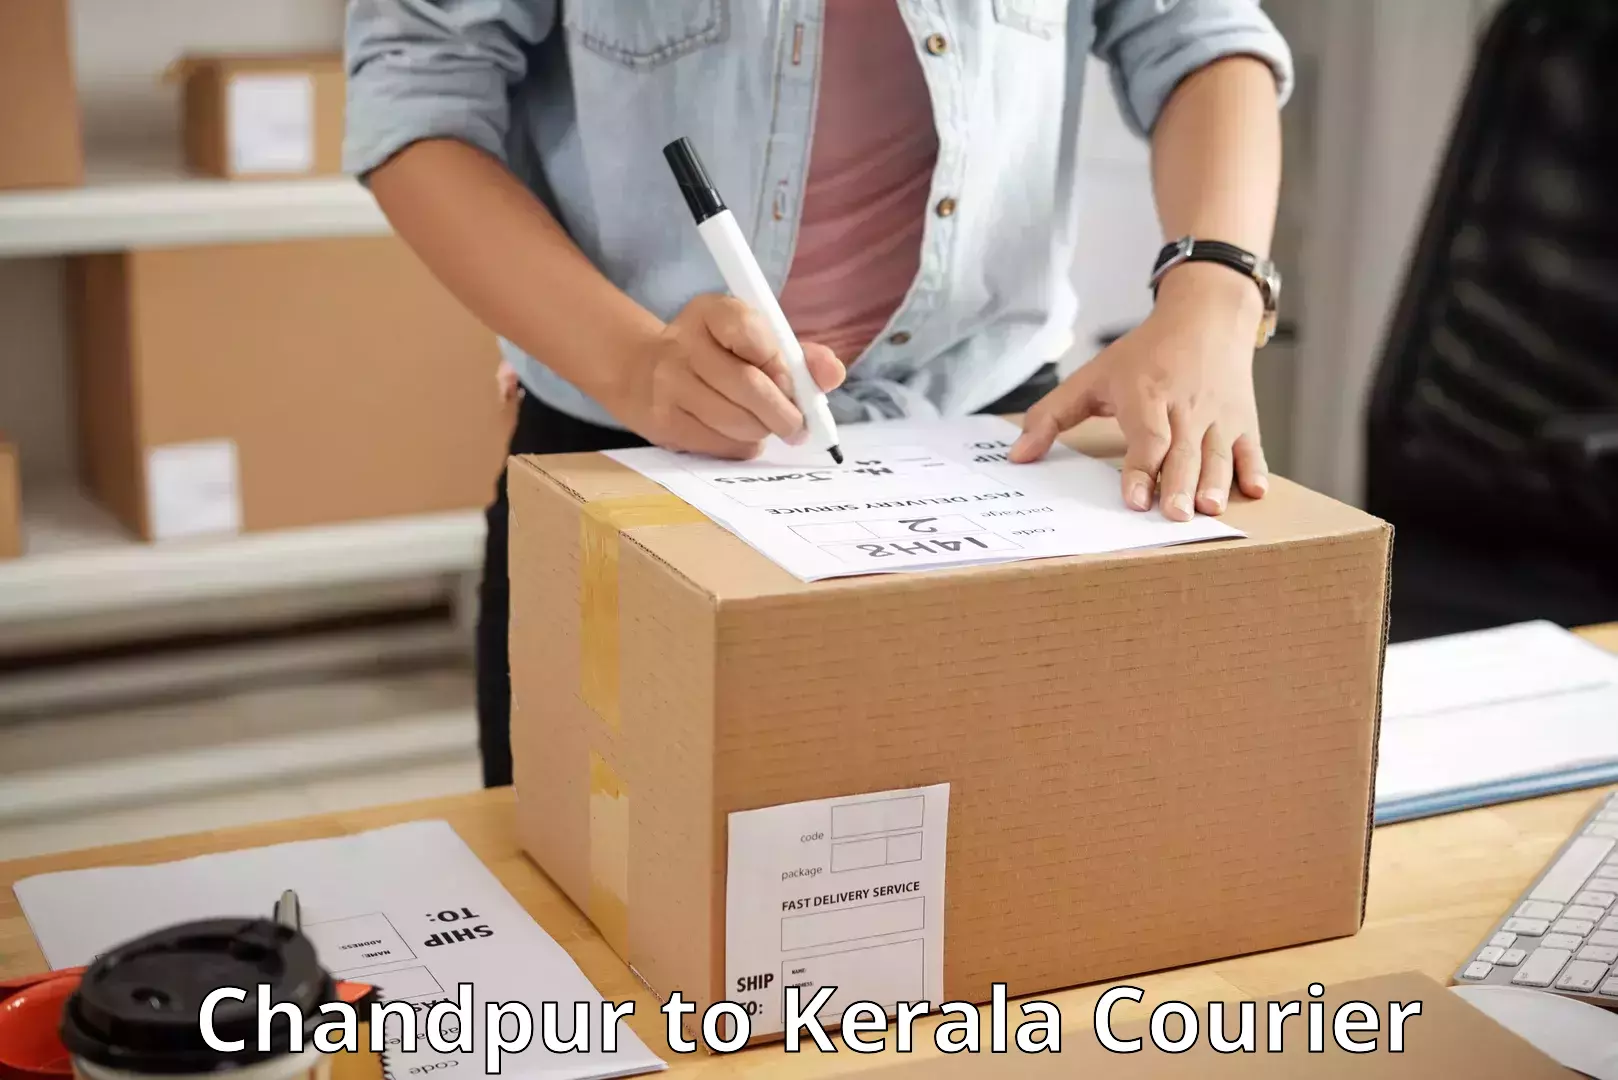 Courier service comparison Chandpur to Kakkur